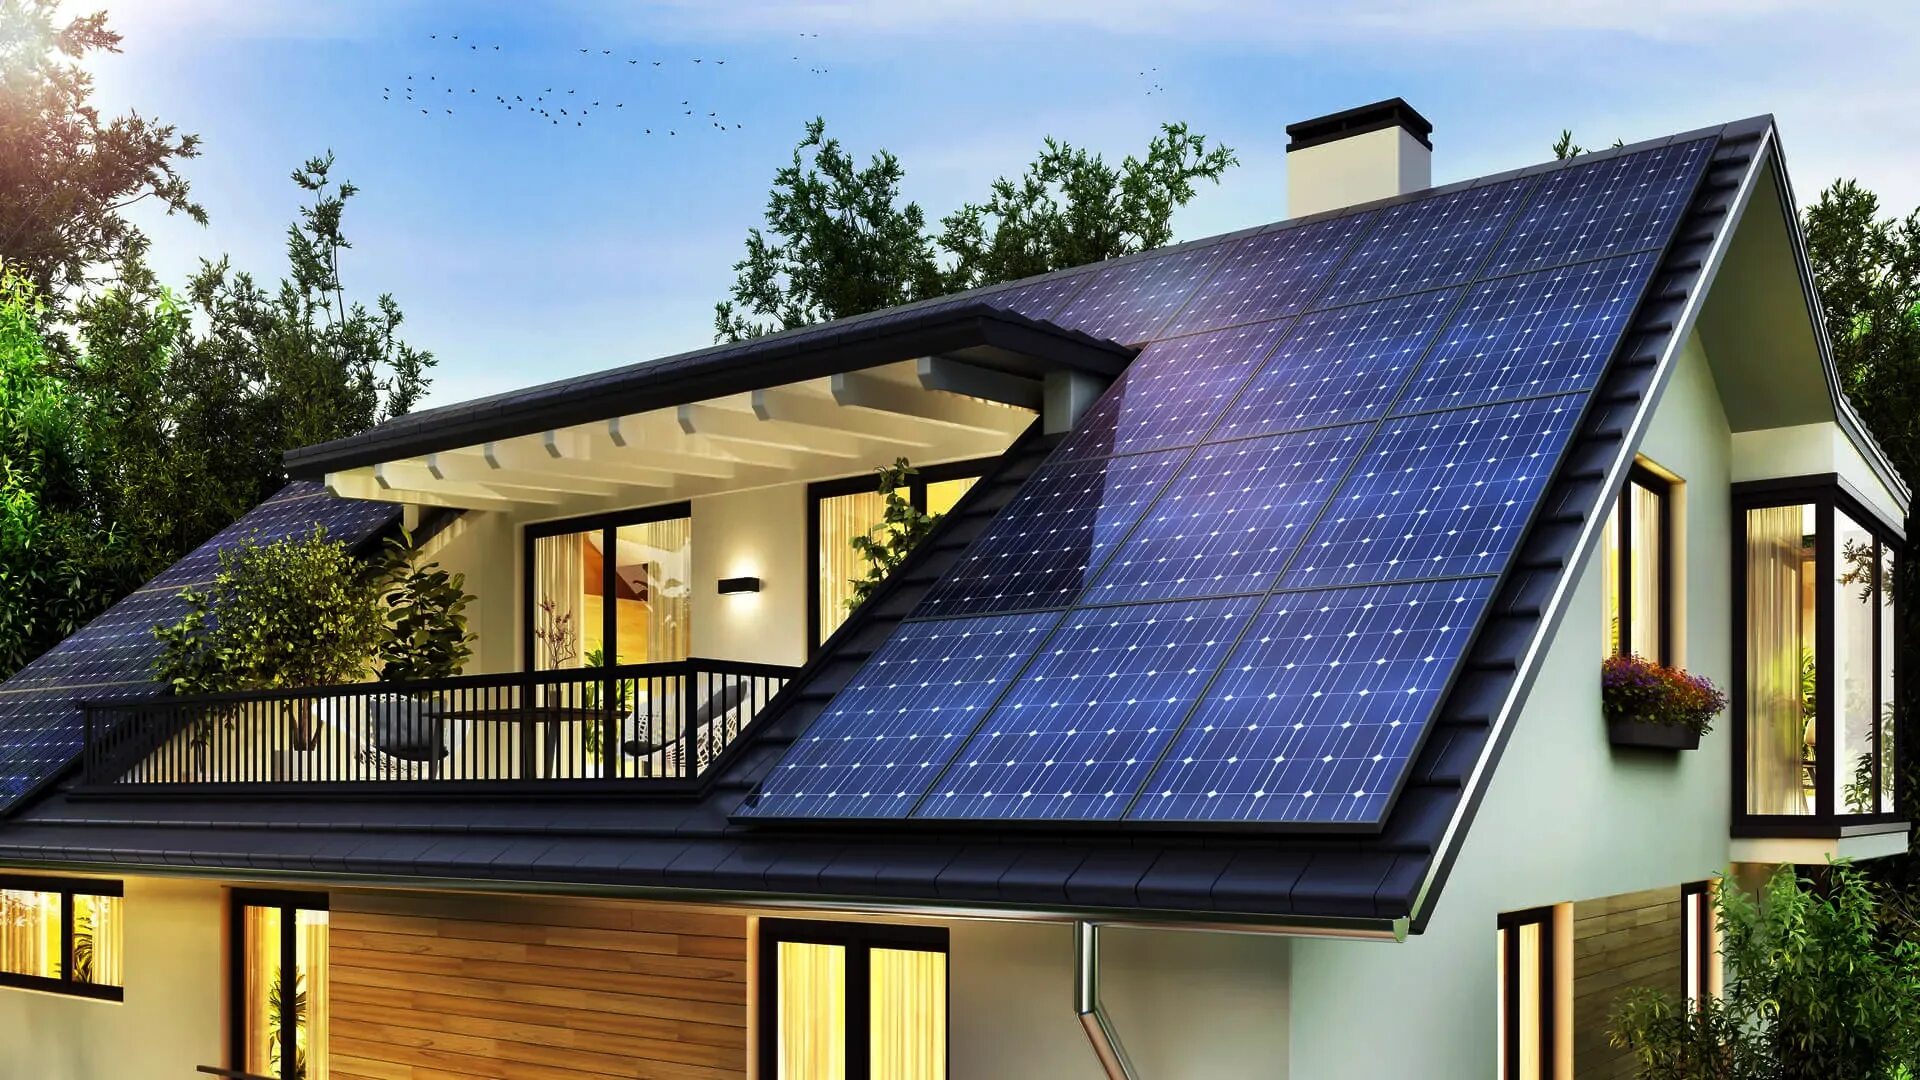 Солнечная панель Solar Roof. Дом с солнечными батареями. Современный дом с солнечными батареями. Дом с солнечными батареями на крыше. Солнечный дом друзья